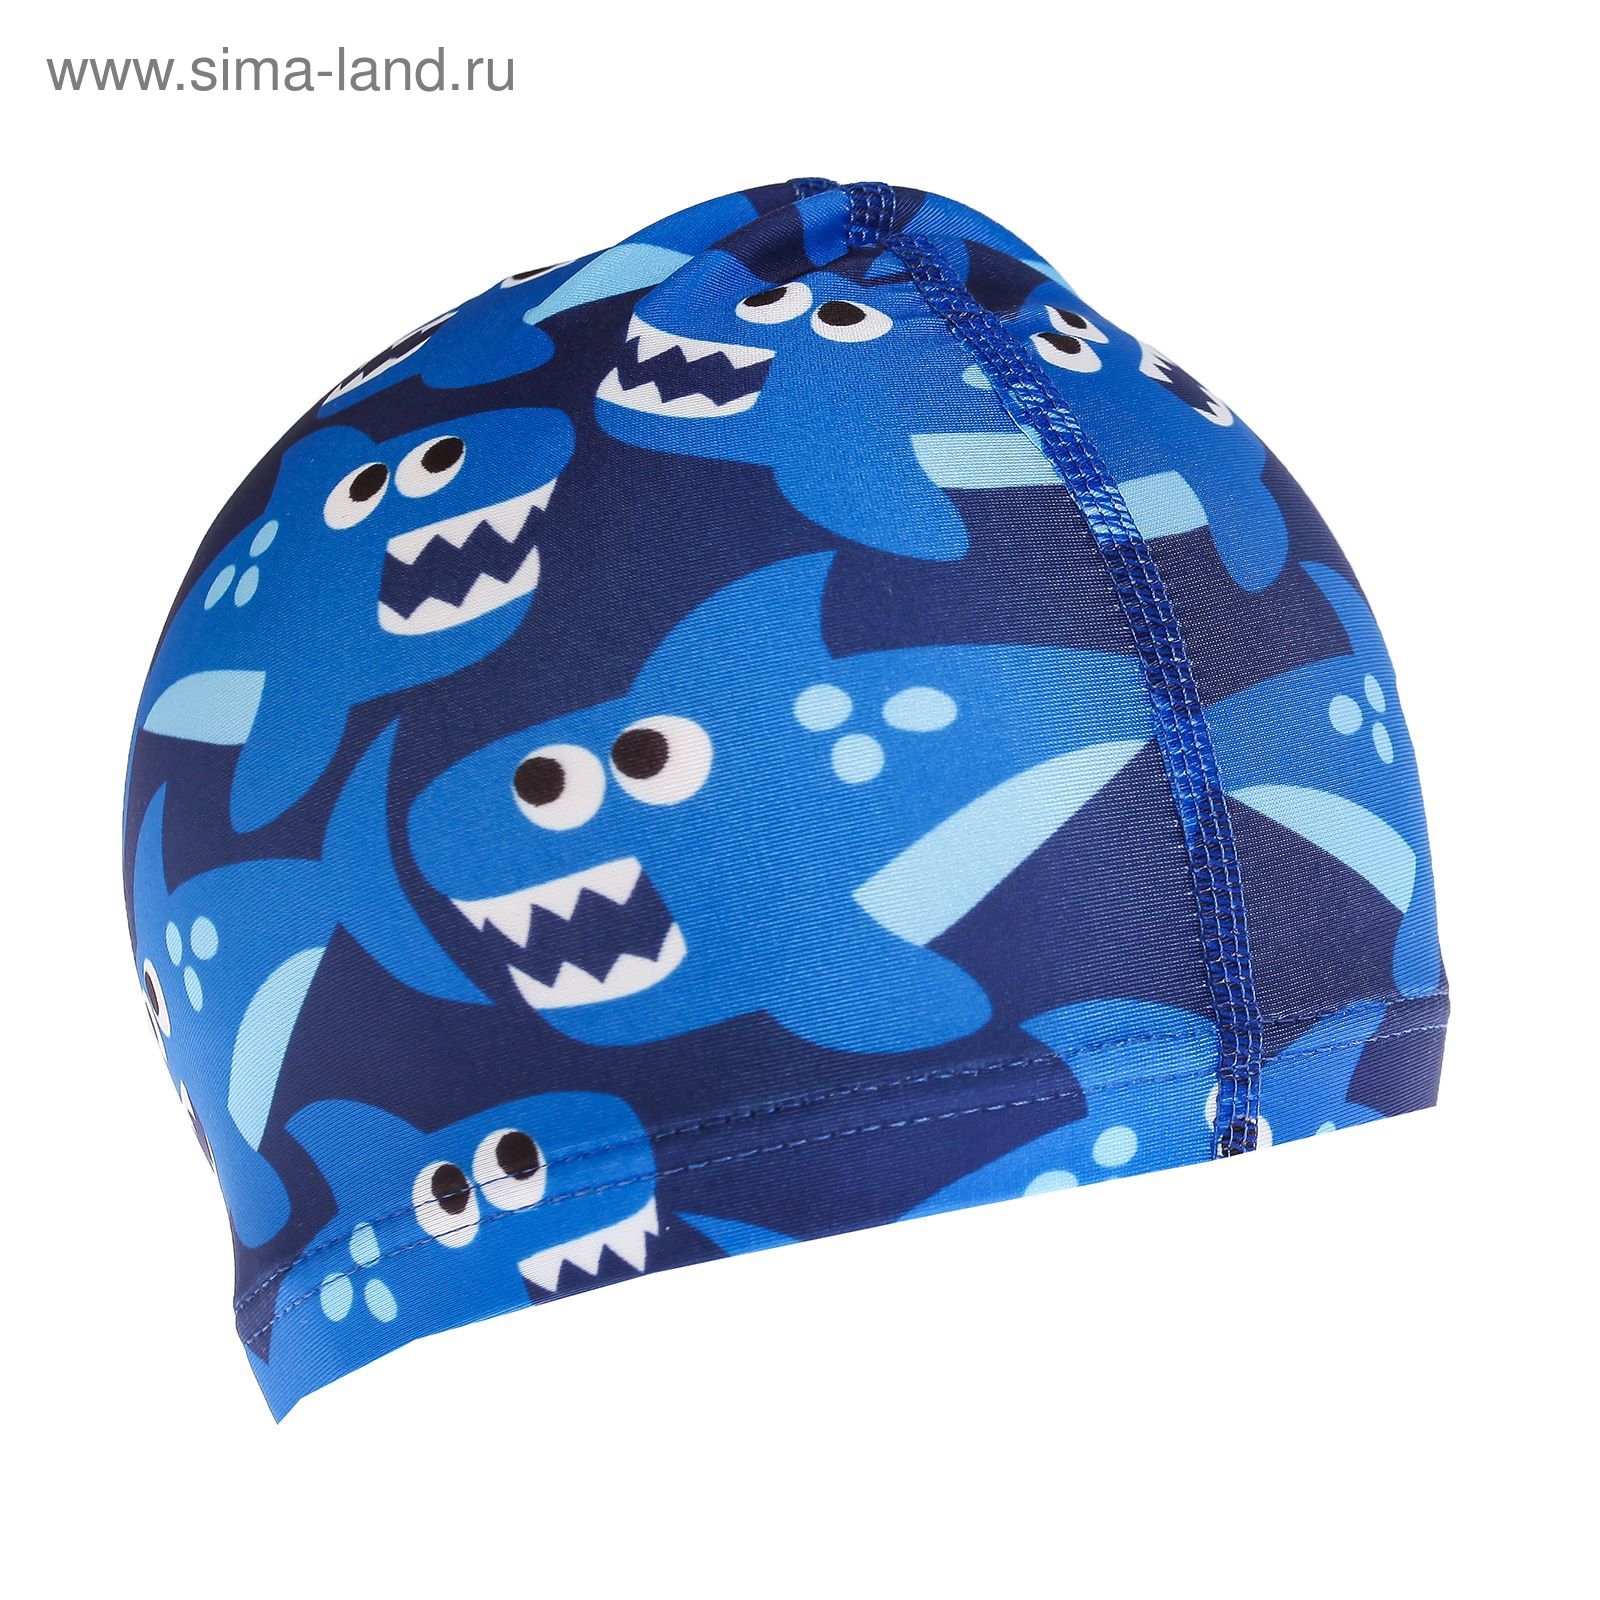 Шапочка для плавания, детская "Акулы" OL-011, текстиль